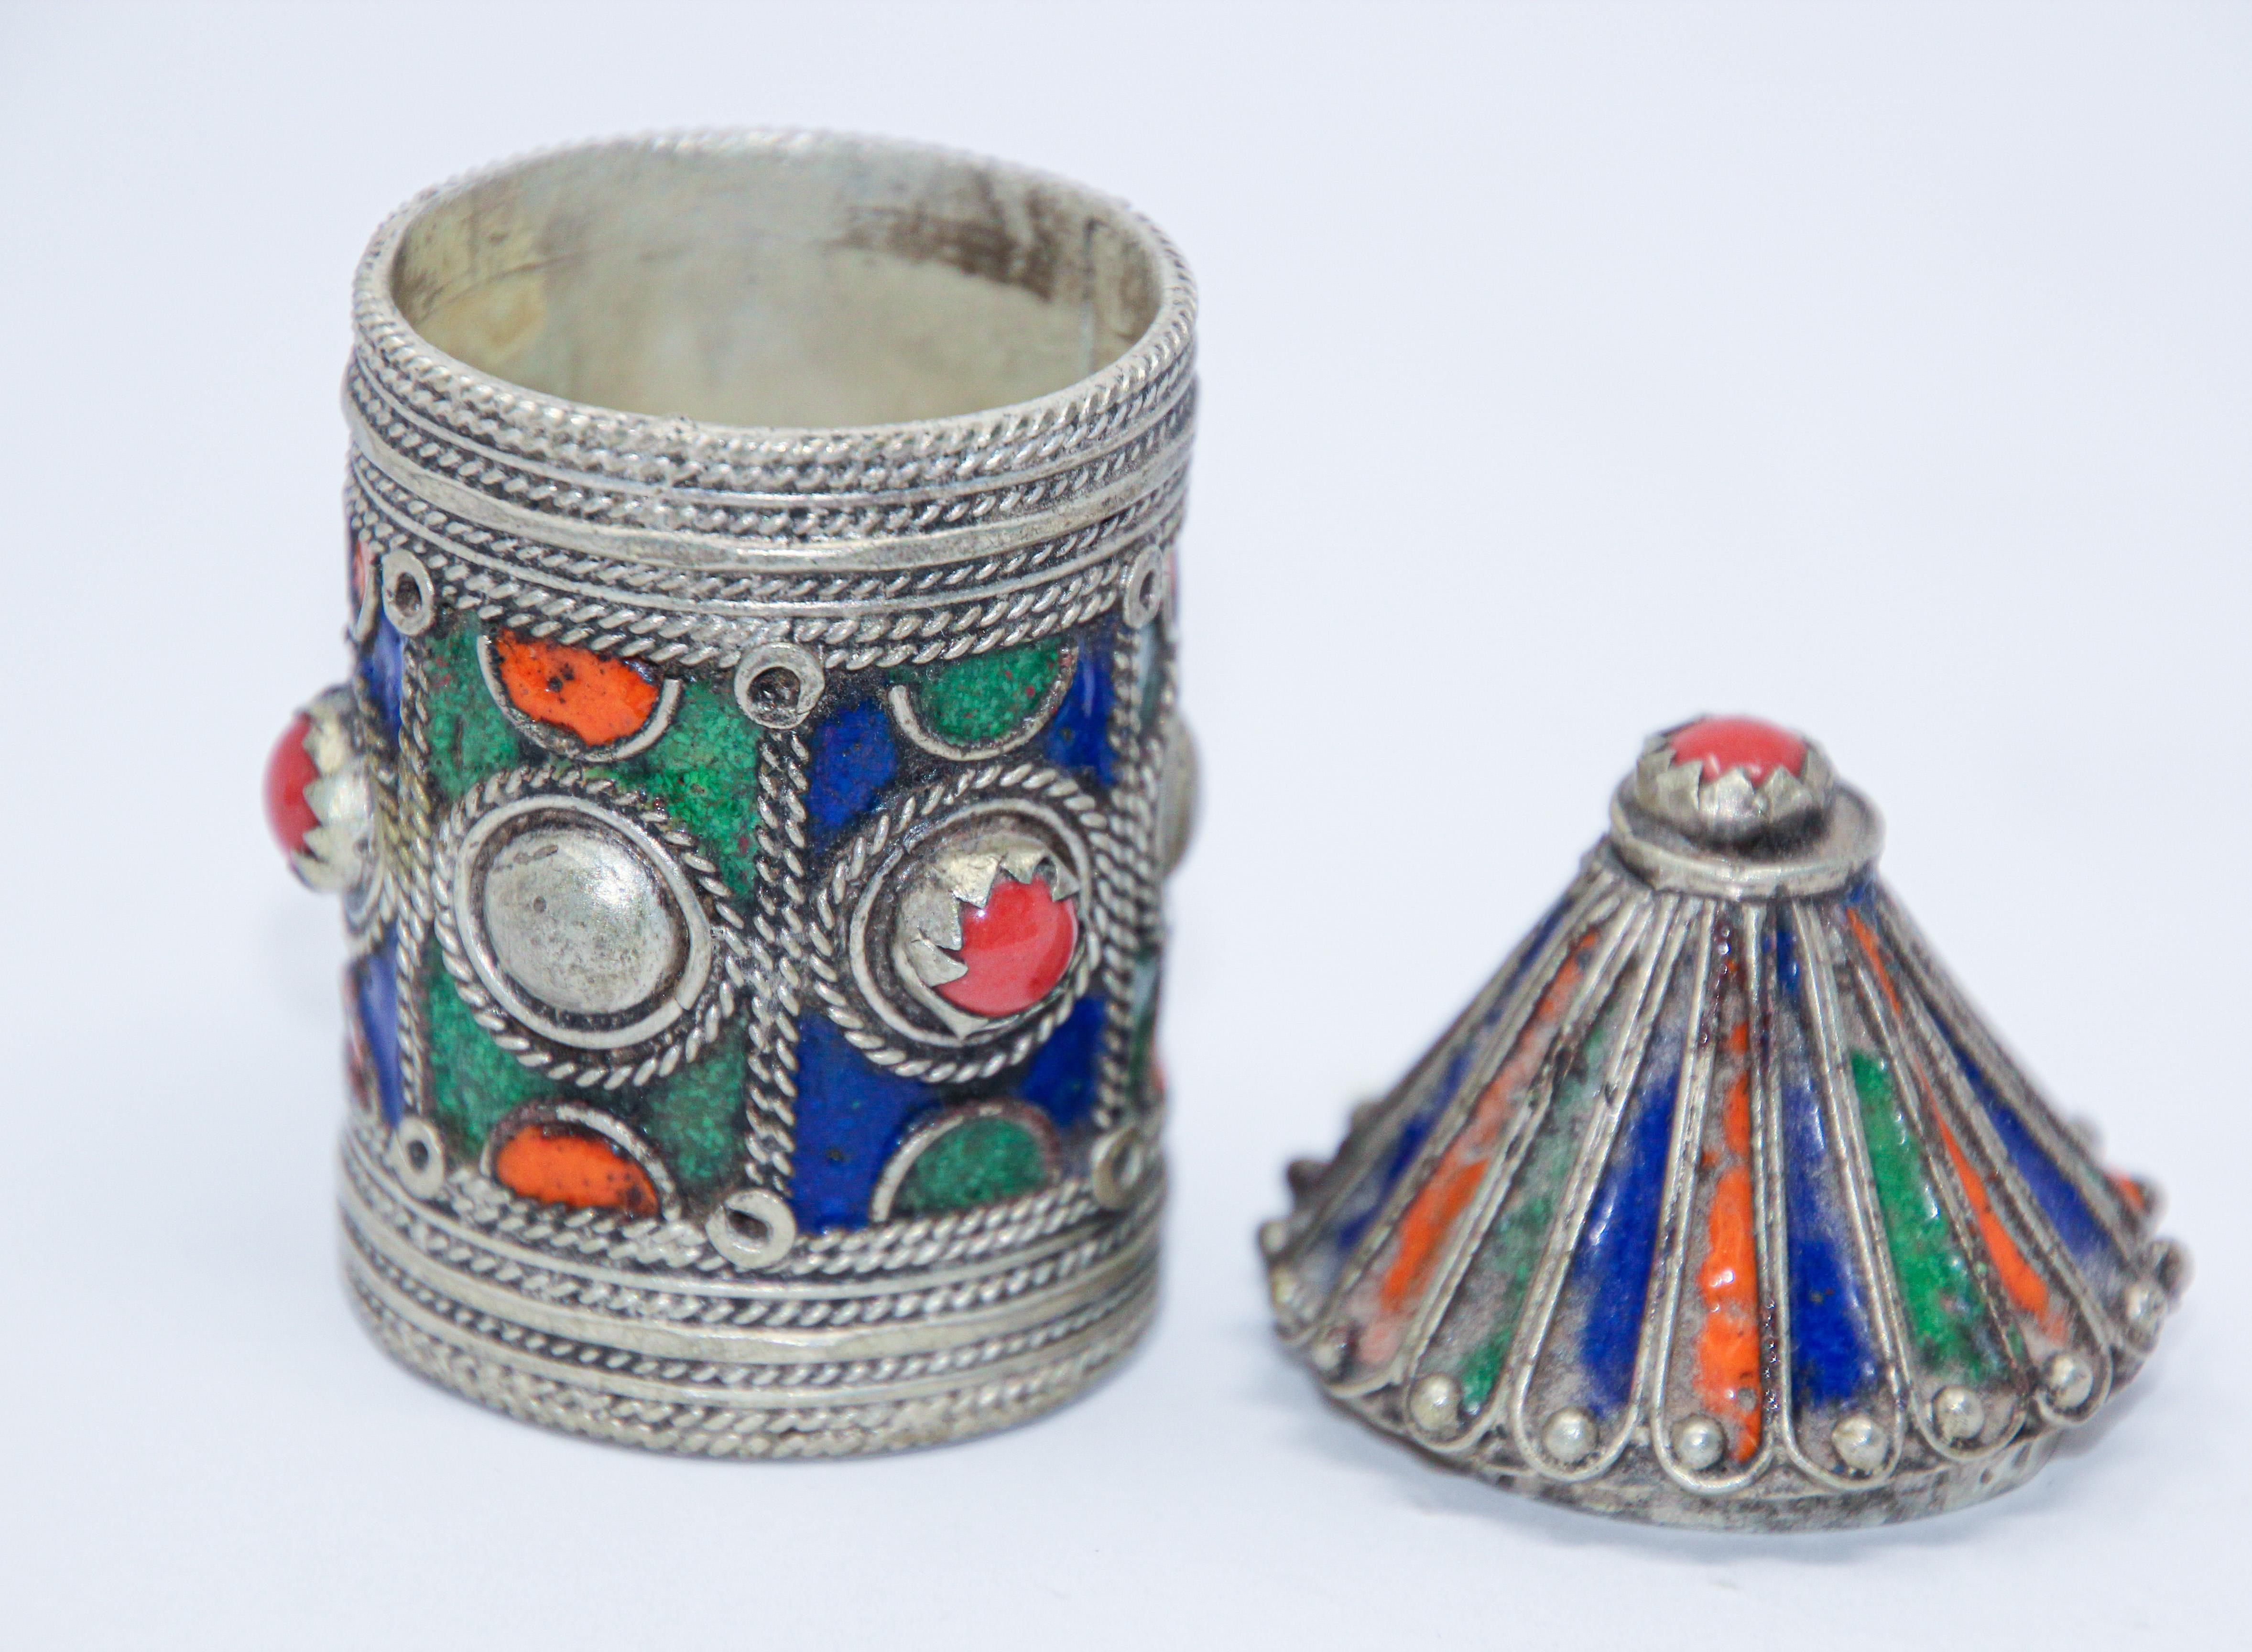 Antike Berber-Kabyle-Schachtel zur Aufbewahrung von losem Puder-Kajalstift.
Aus gewaschenem Silber mit filigraner Emaille in Pagodenform.
Emaille und Strass aus silberfarbenem Metall mit filigranen Schuppen und aufgetragener Emaille in rot, grün,